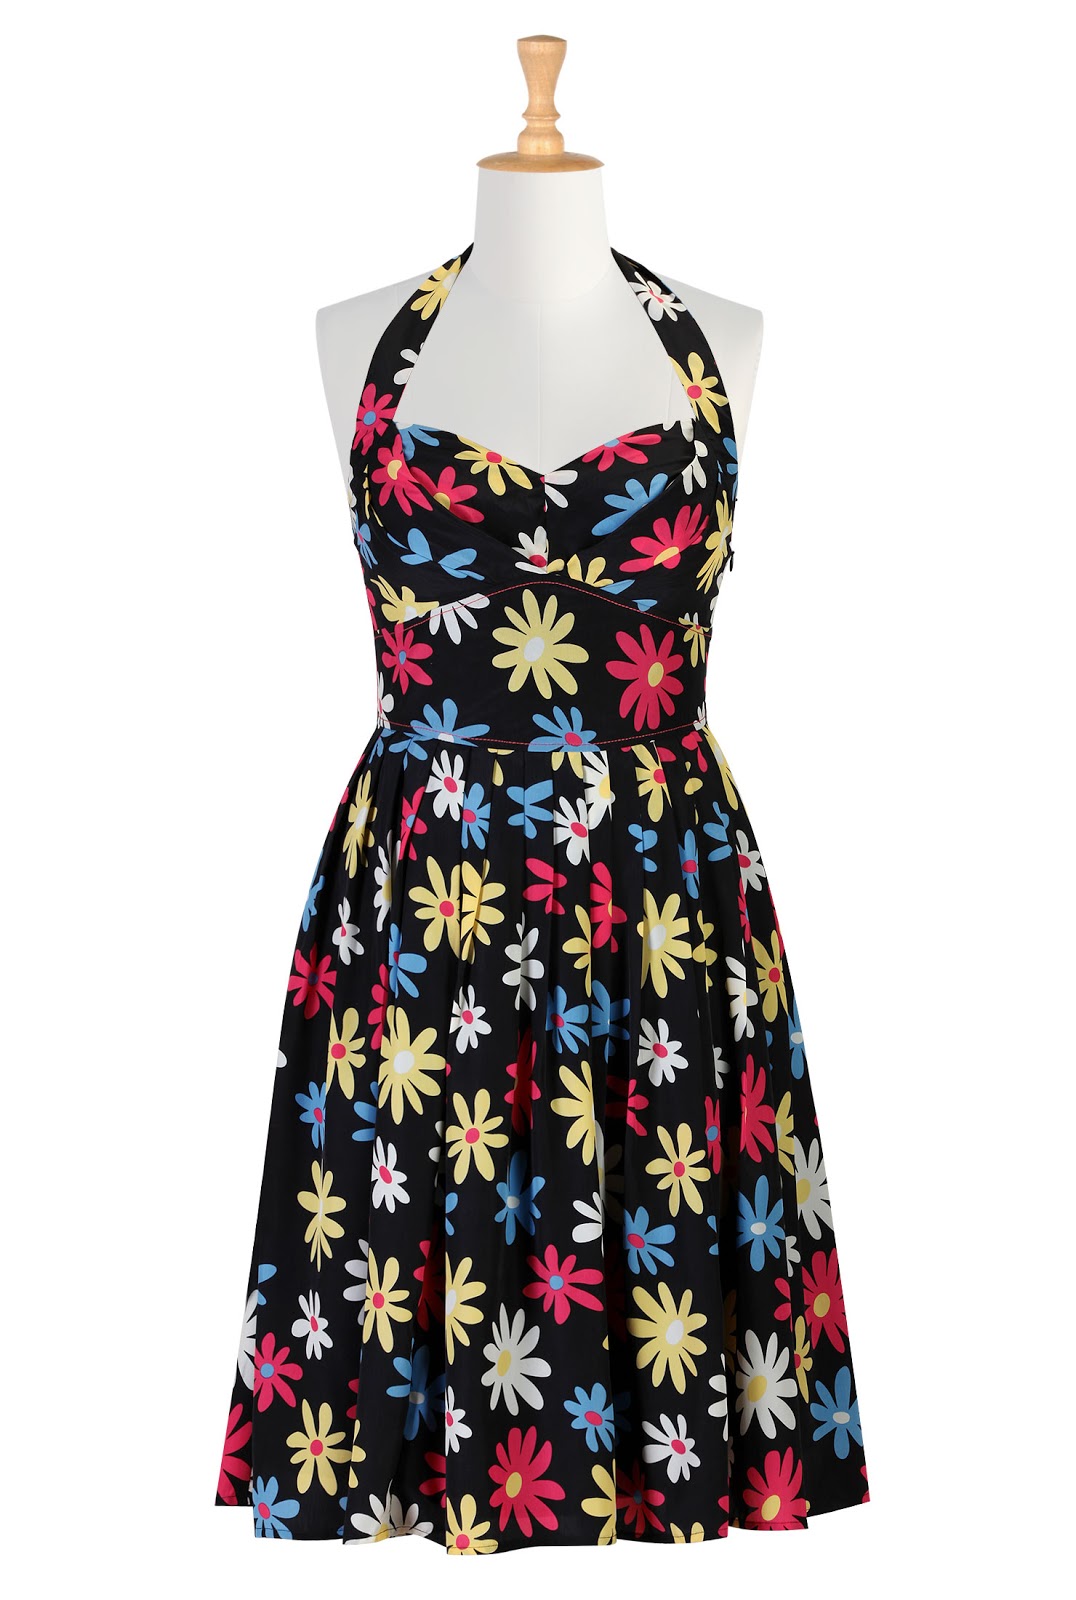 Mod floral print halter dress.